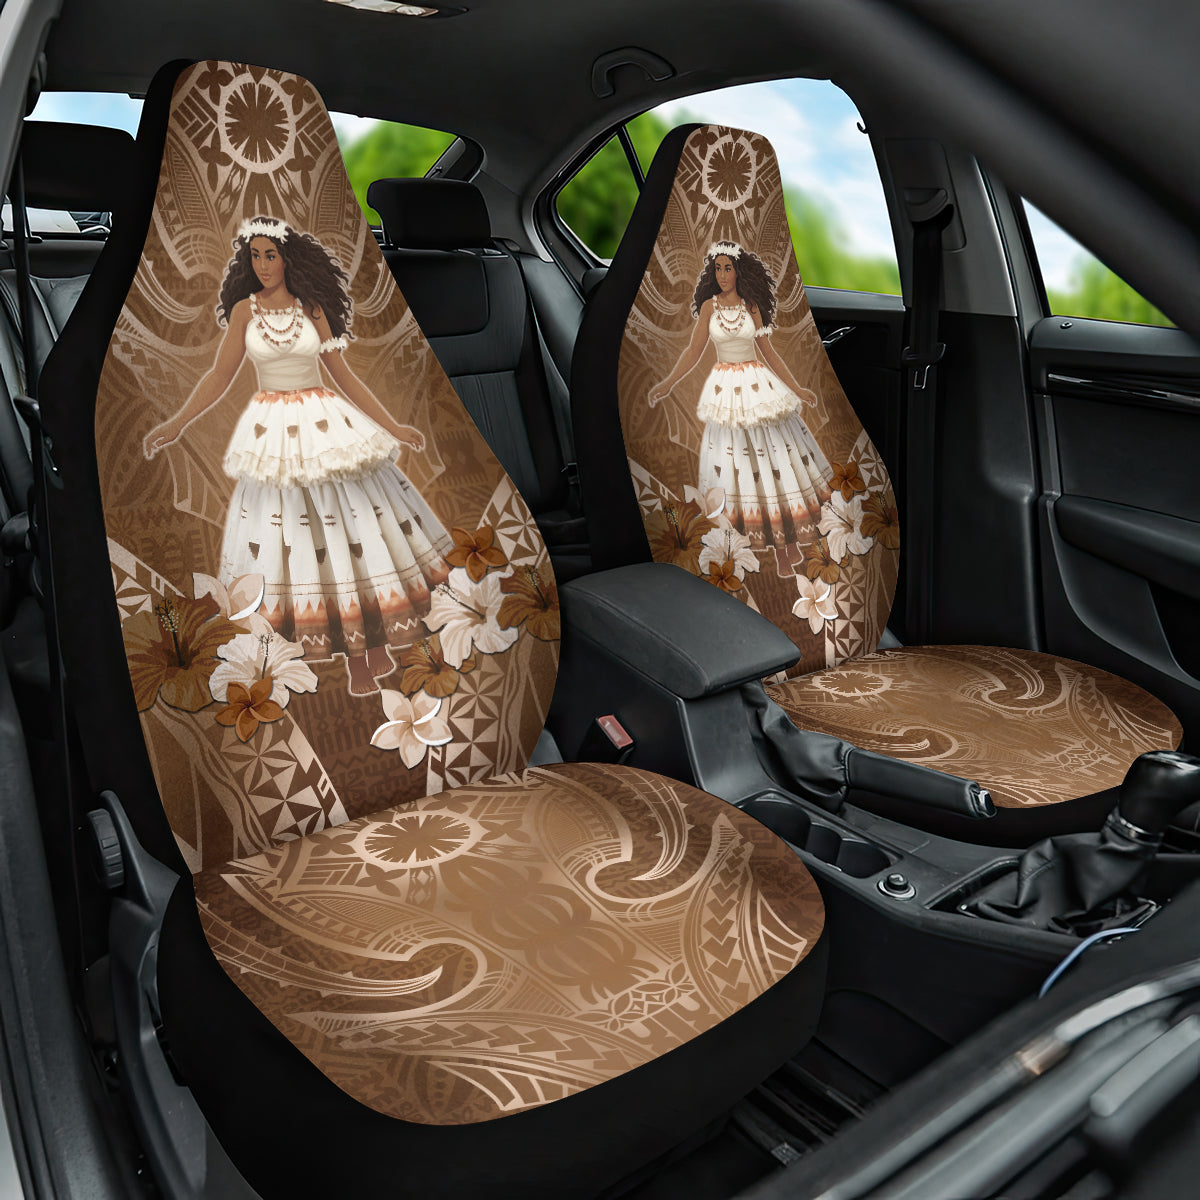 Bula Fiji Women's Day Car Seat Cover With Fijian Tapa Pattern